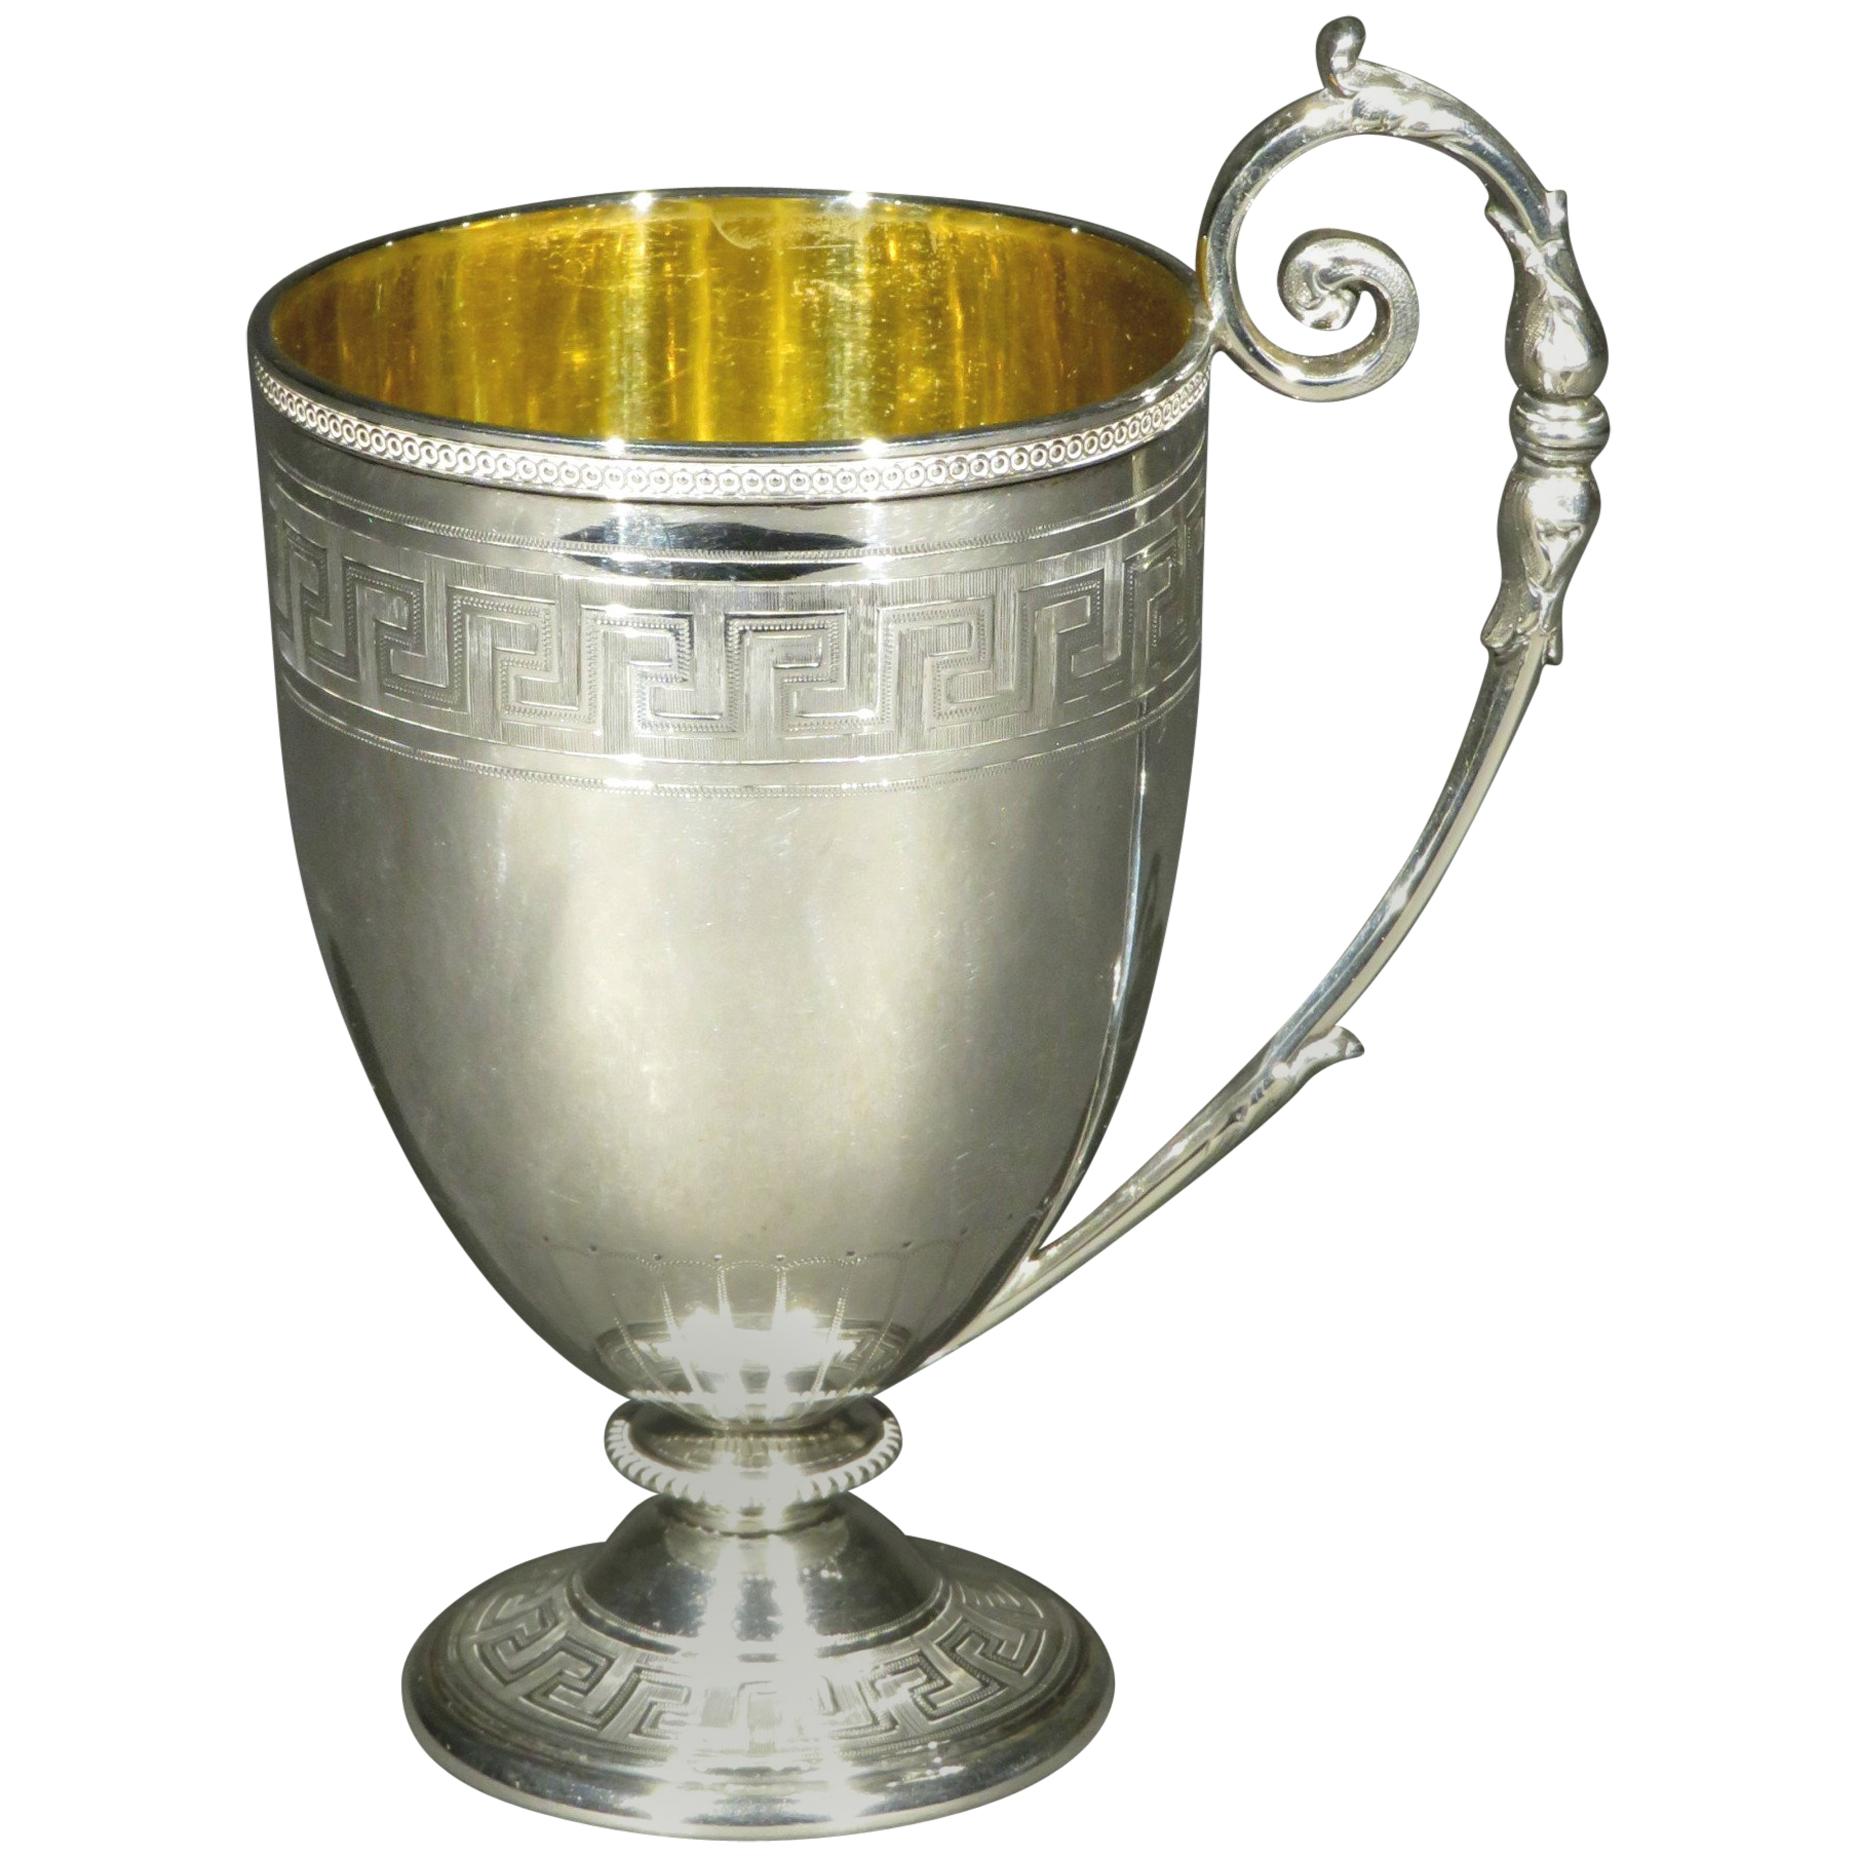 Une exceptionnelle tasse de baptême en argent sterling de style néoclassique, présentant un élégant bol en forme de gobelet décoré d'un bord perlé guilloché, au-dessus d'une bande de motifs gravés de clés grecques. 
L'intérieur présente une surface